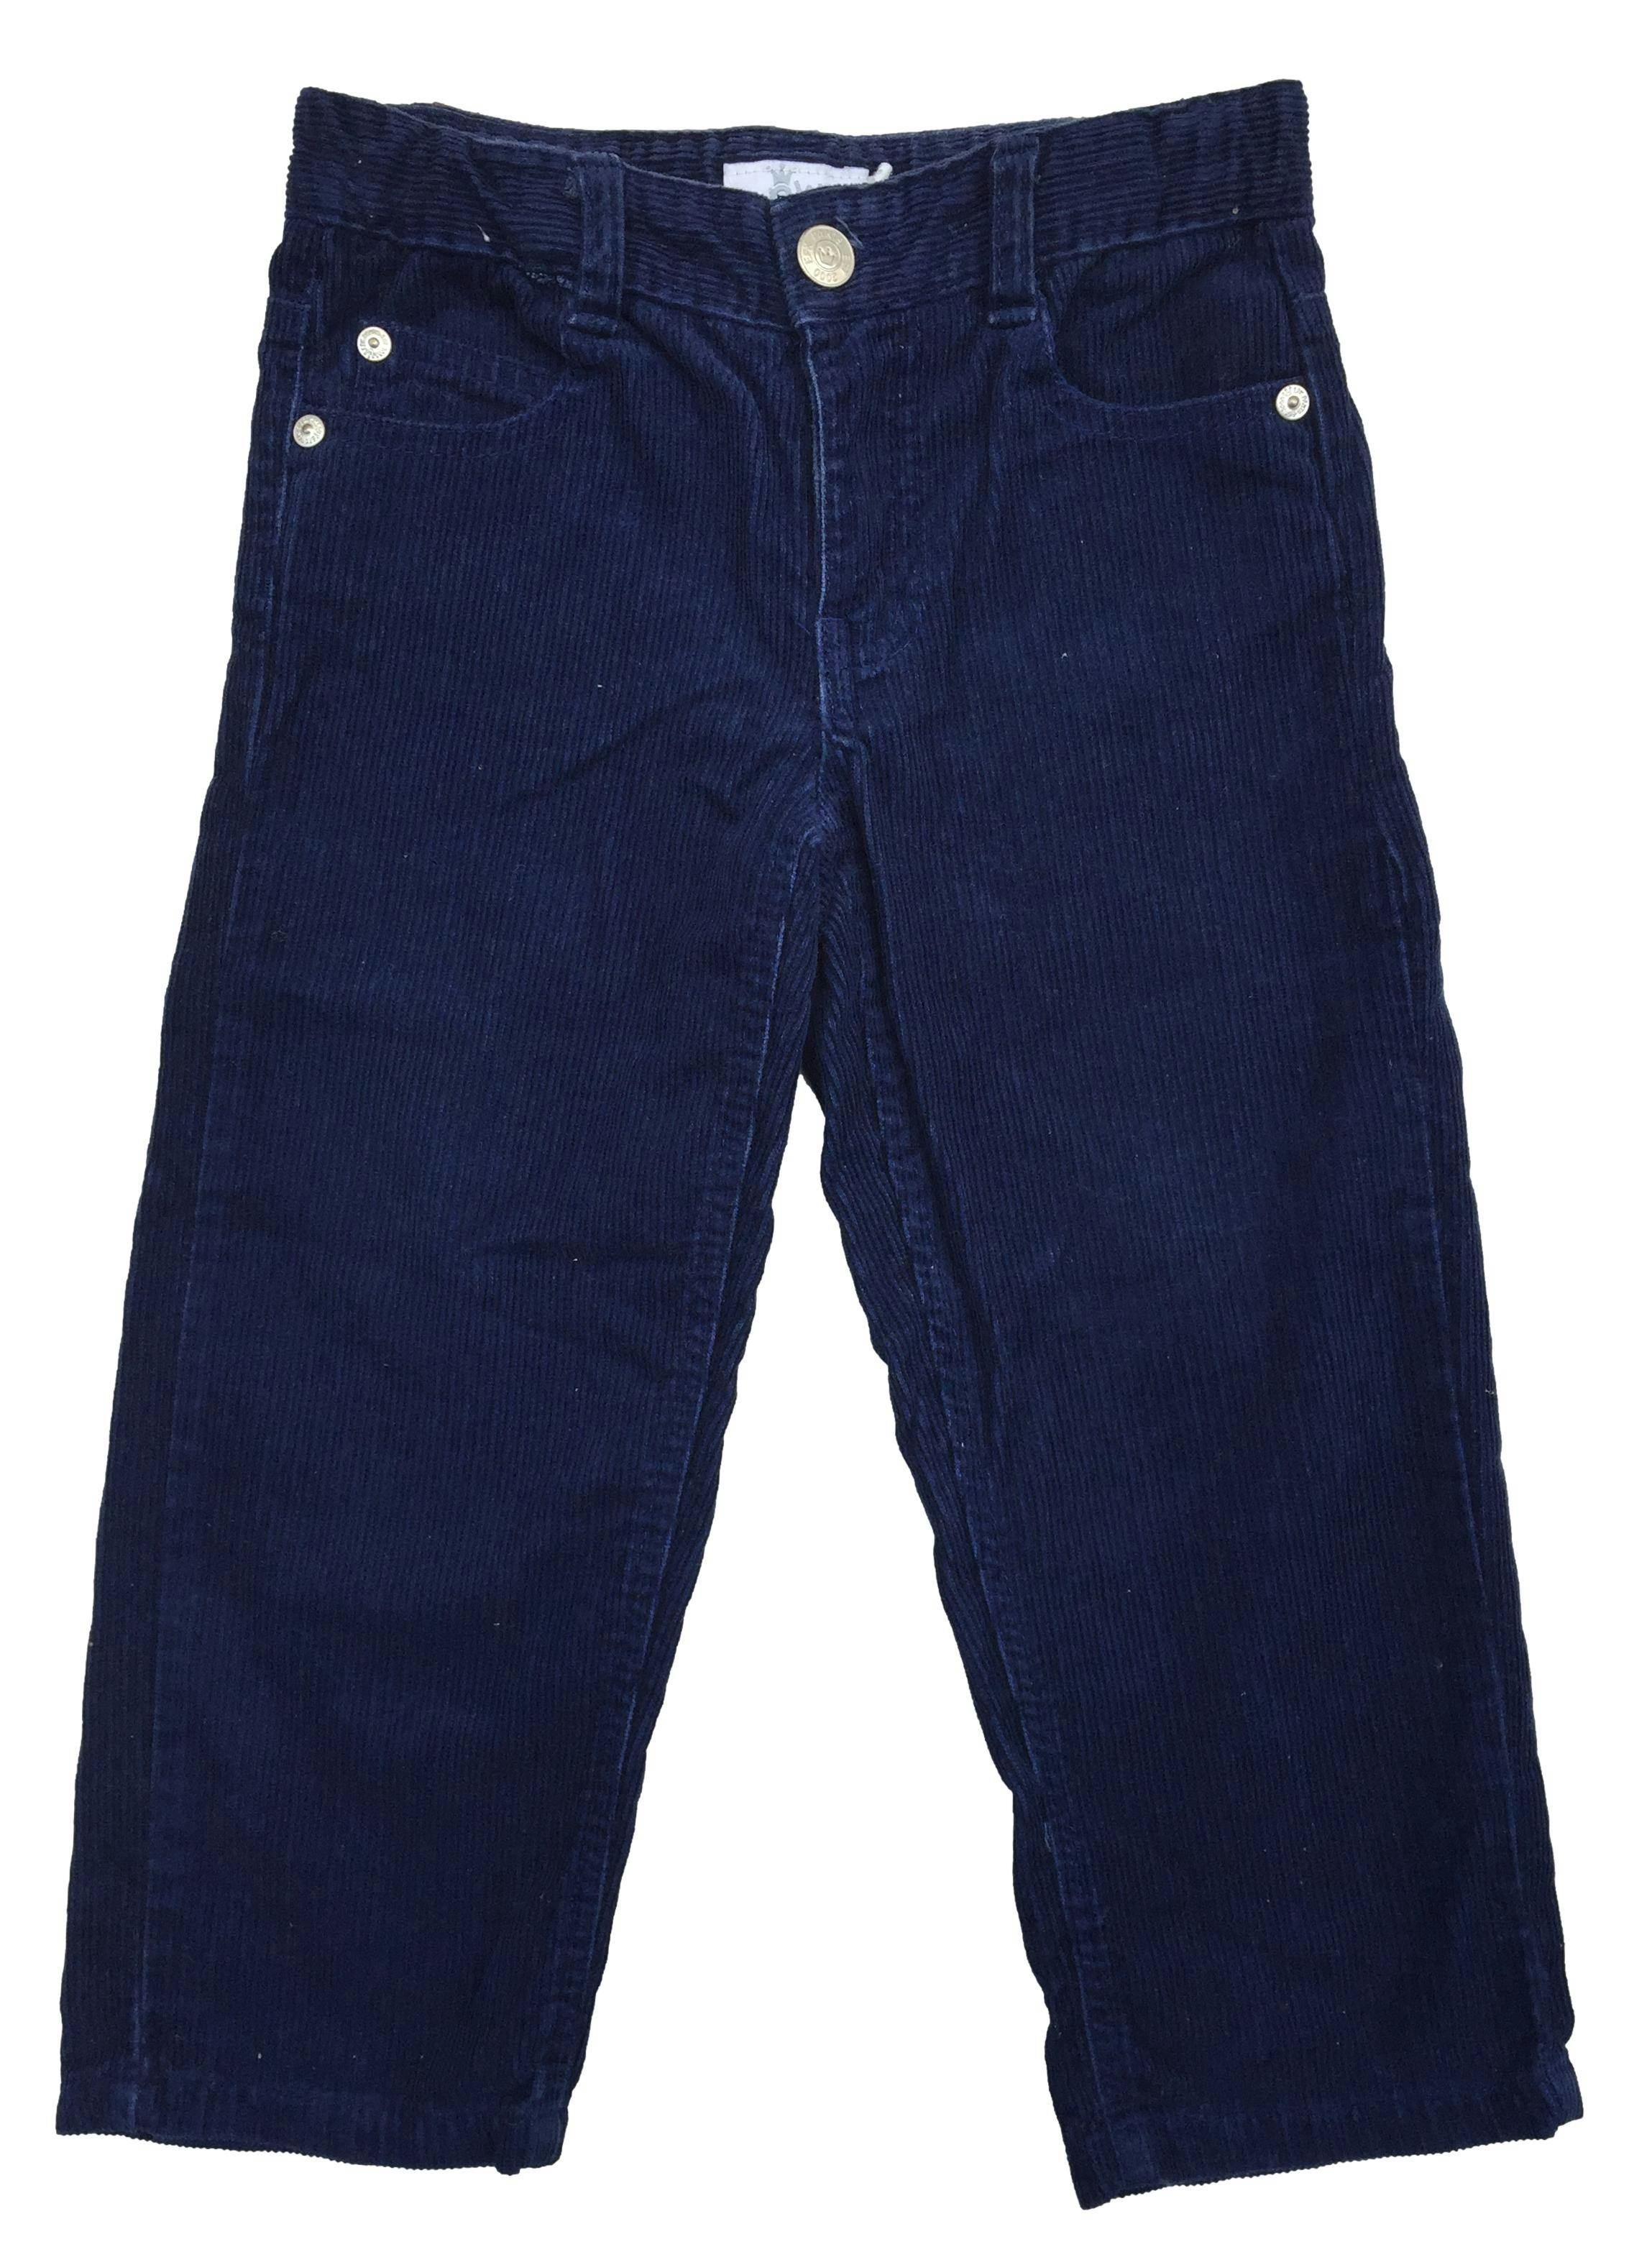 Pantalón EPK corduroy azul con bolsillos.